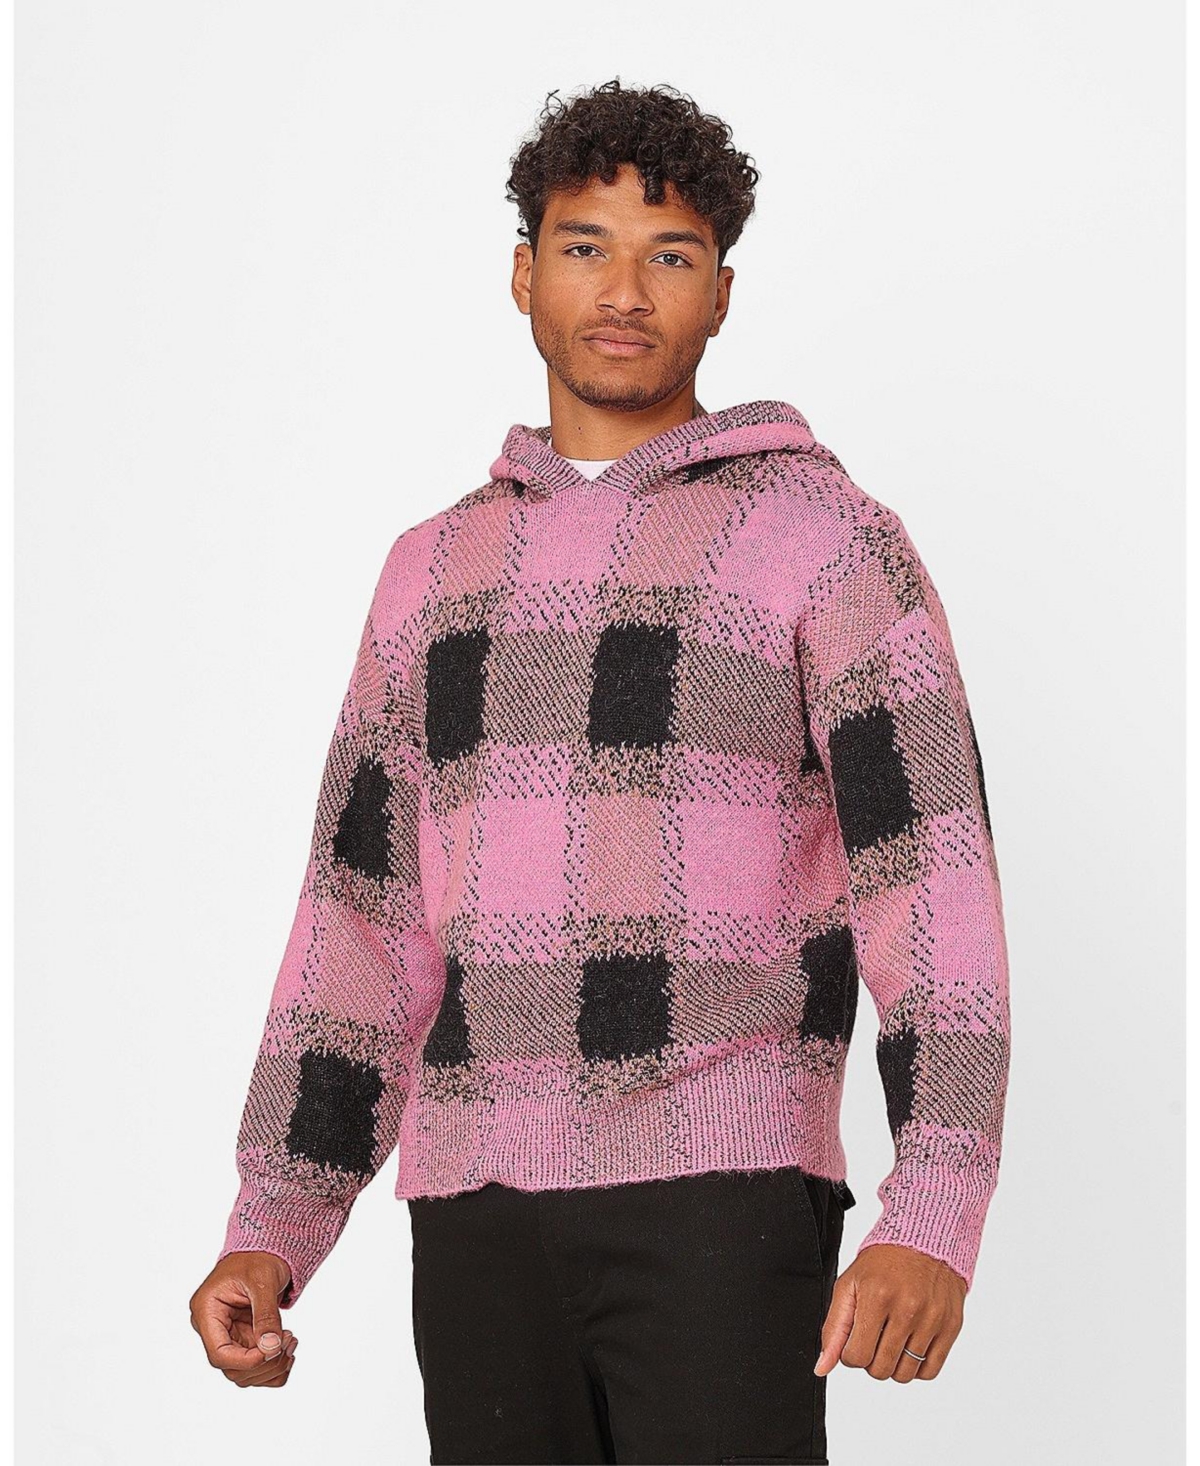 Dalas Plaid Sweater Hoodie - Pink/black